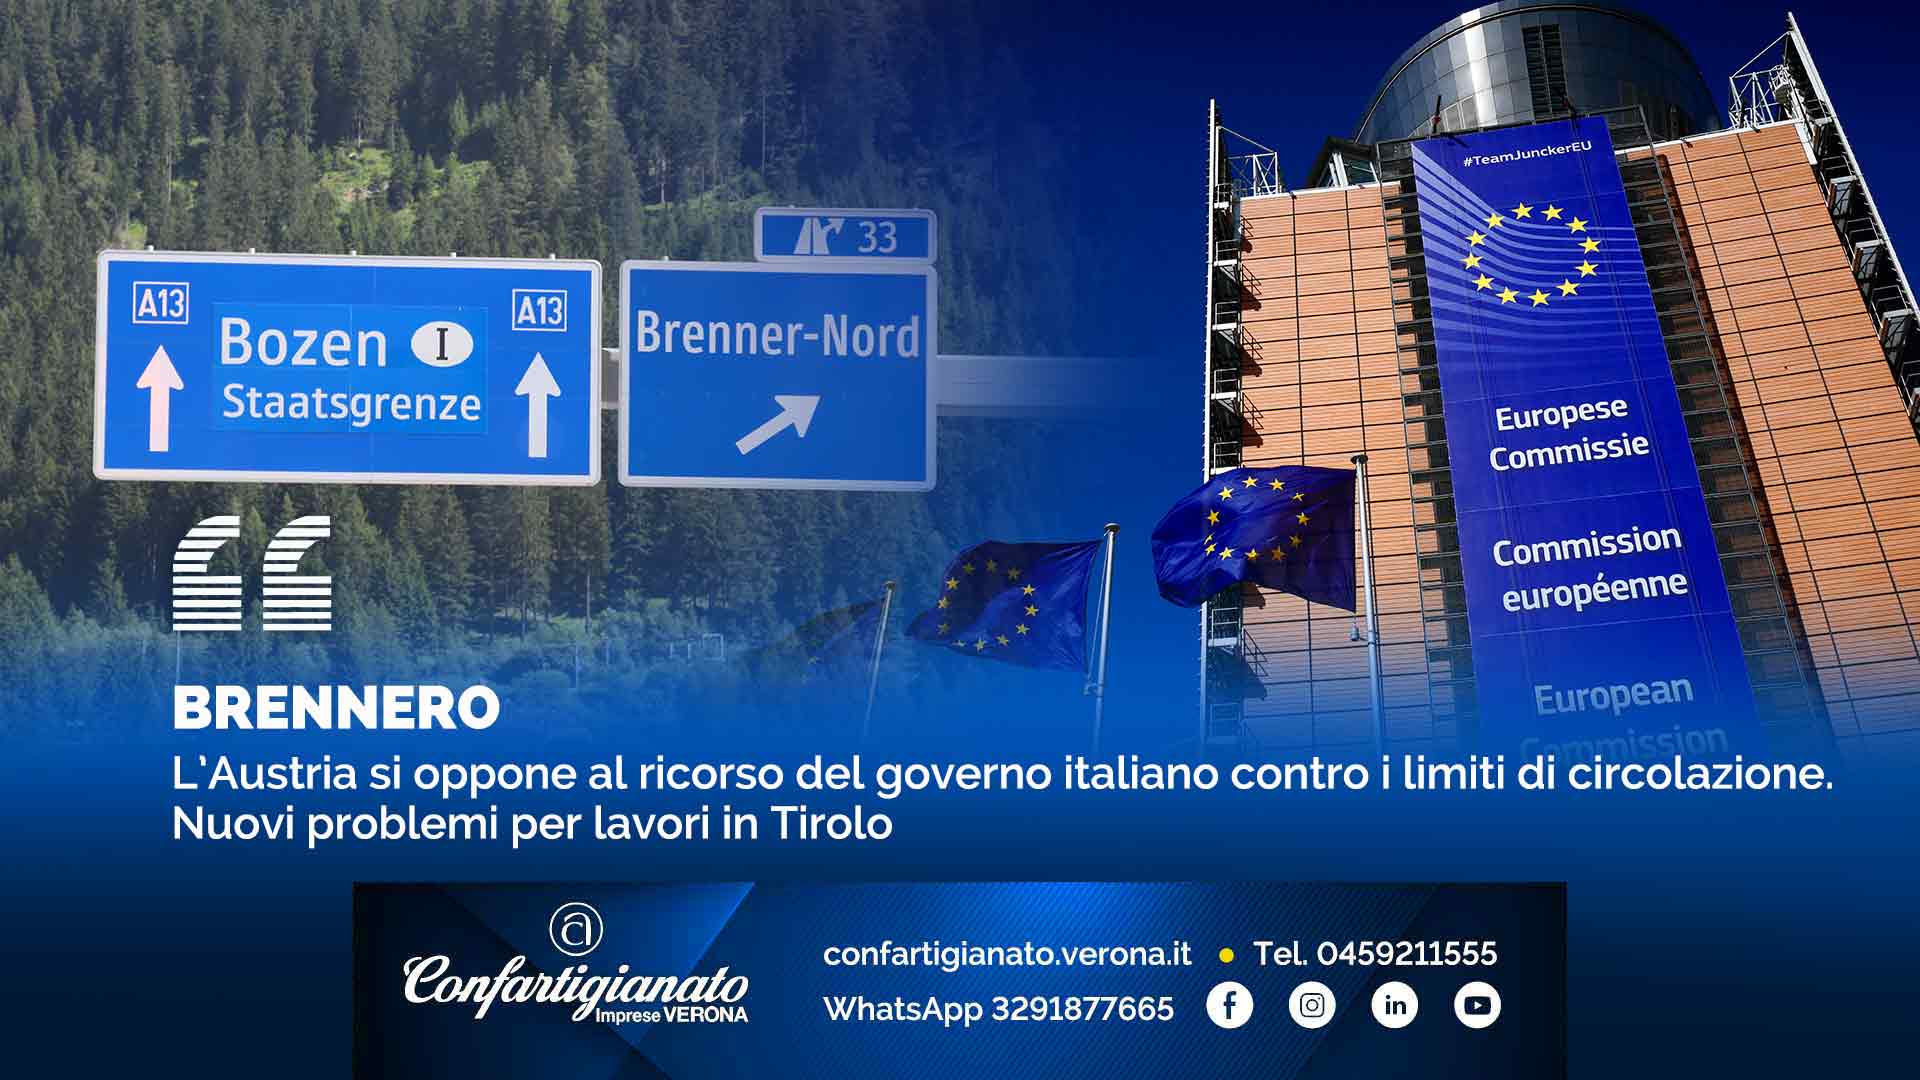 BRENNERO – L’Austria si oppone al ricorso del governo italiano contro i limiti di circolazione. Nuovi problemi per lavori in Tirolo